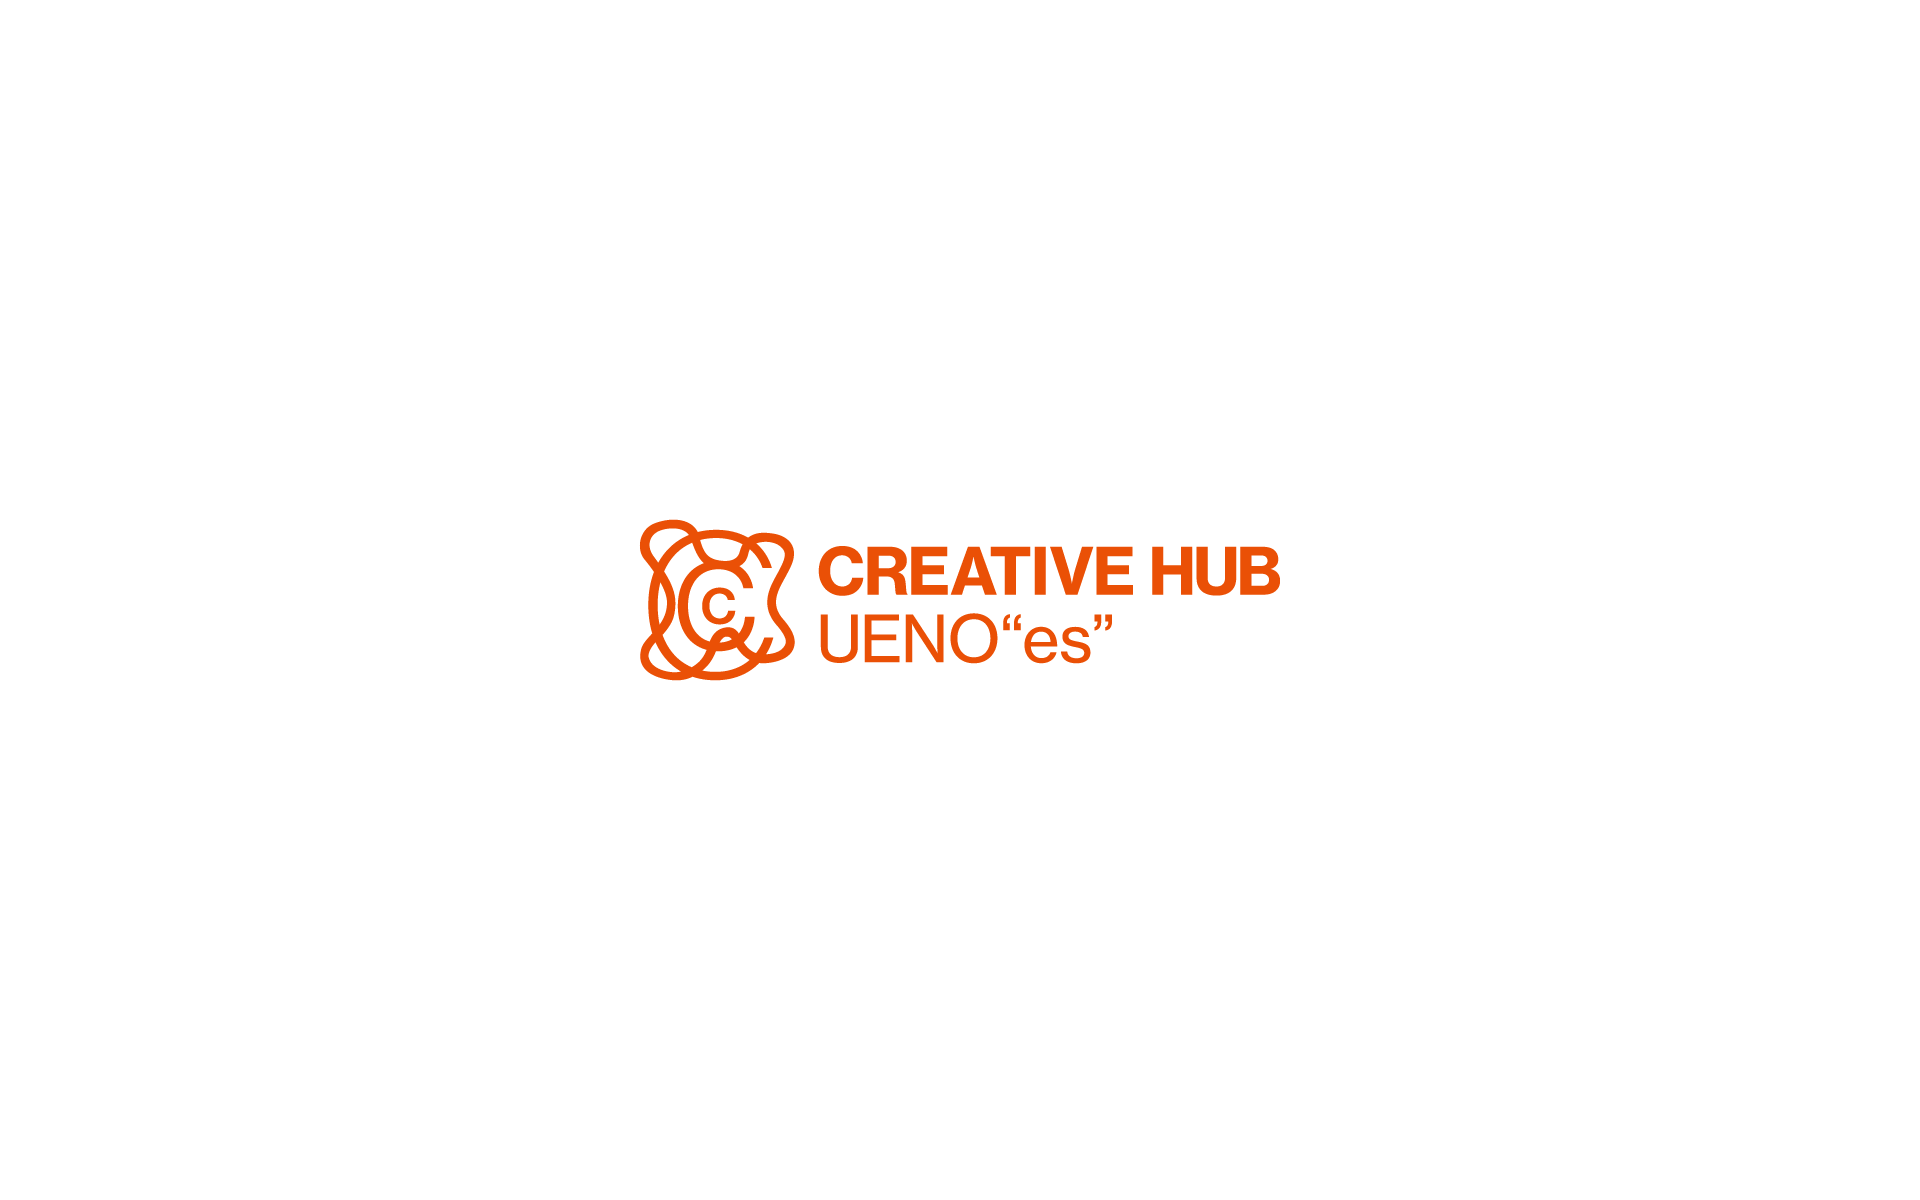 【東京藝大×JR東日本の包括連携プロジェクト第一弾】上野駅「CREATIVE HUB UENO “es”」を開設します